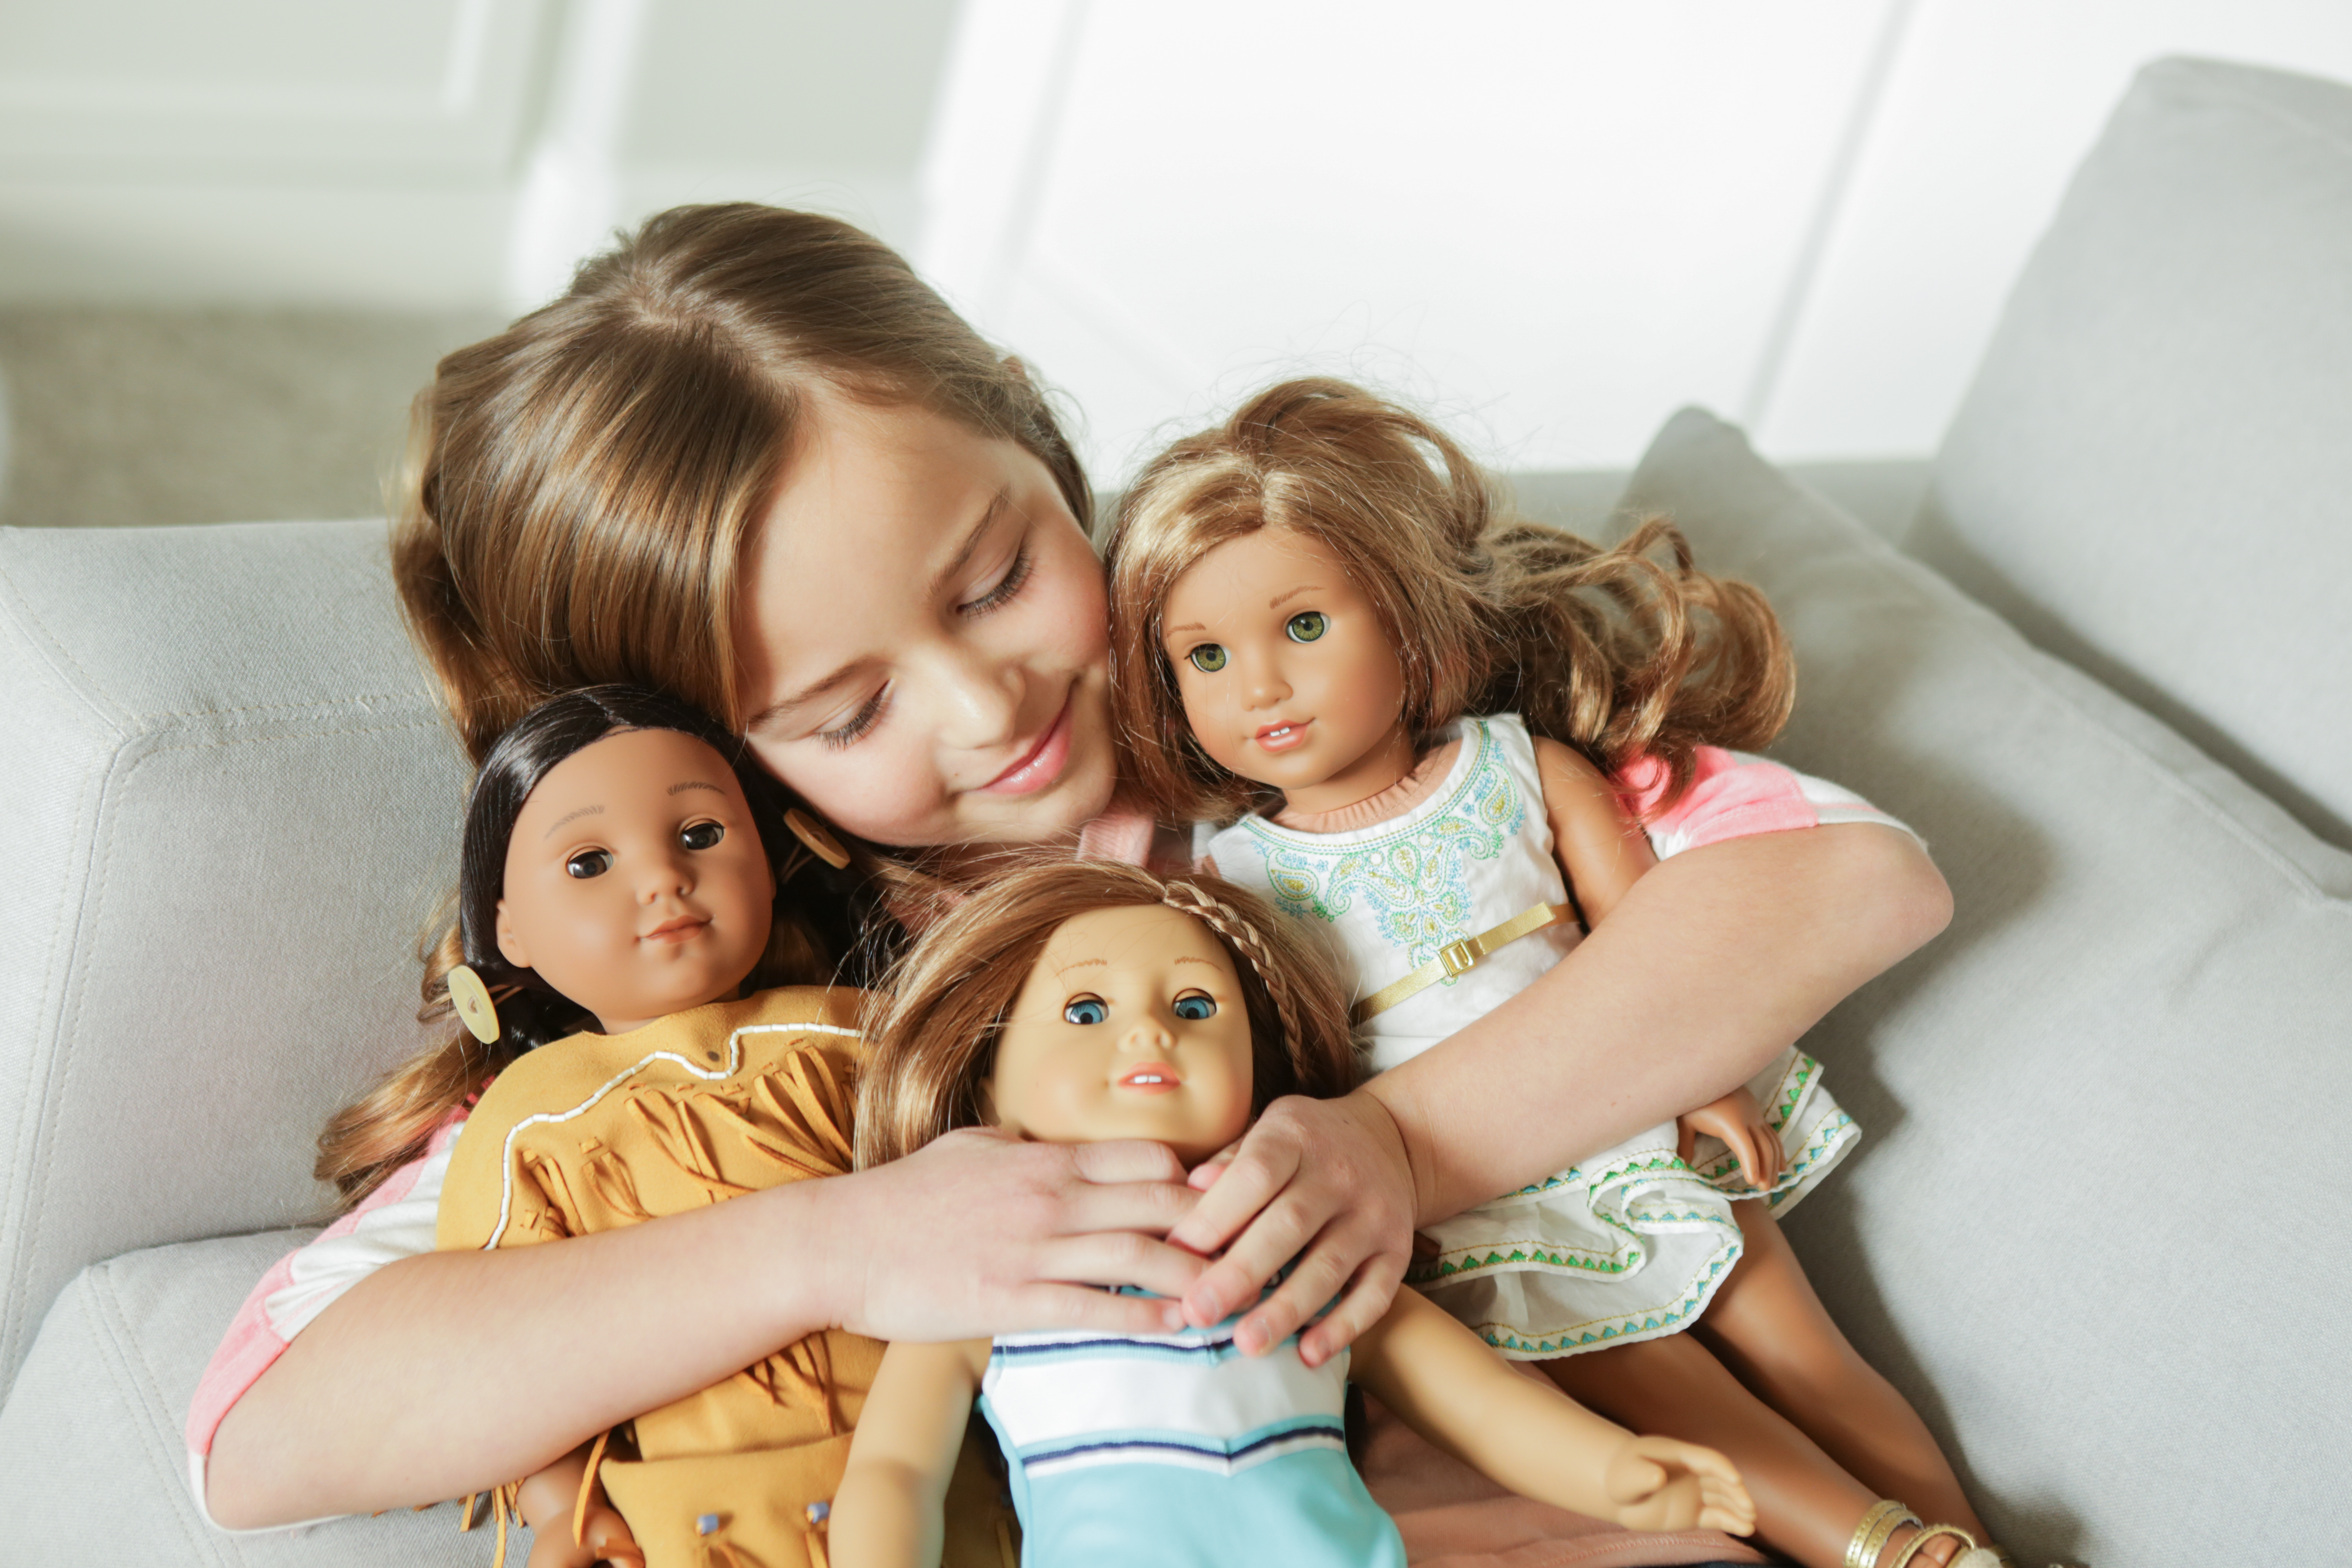 american girl doll offer code